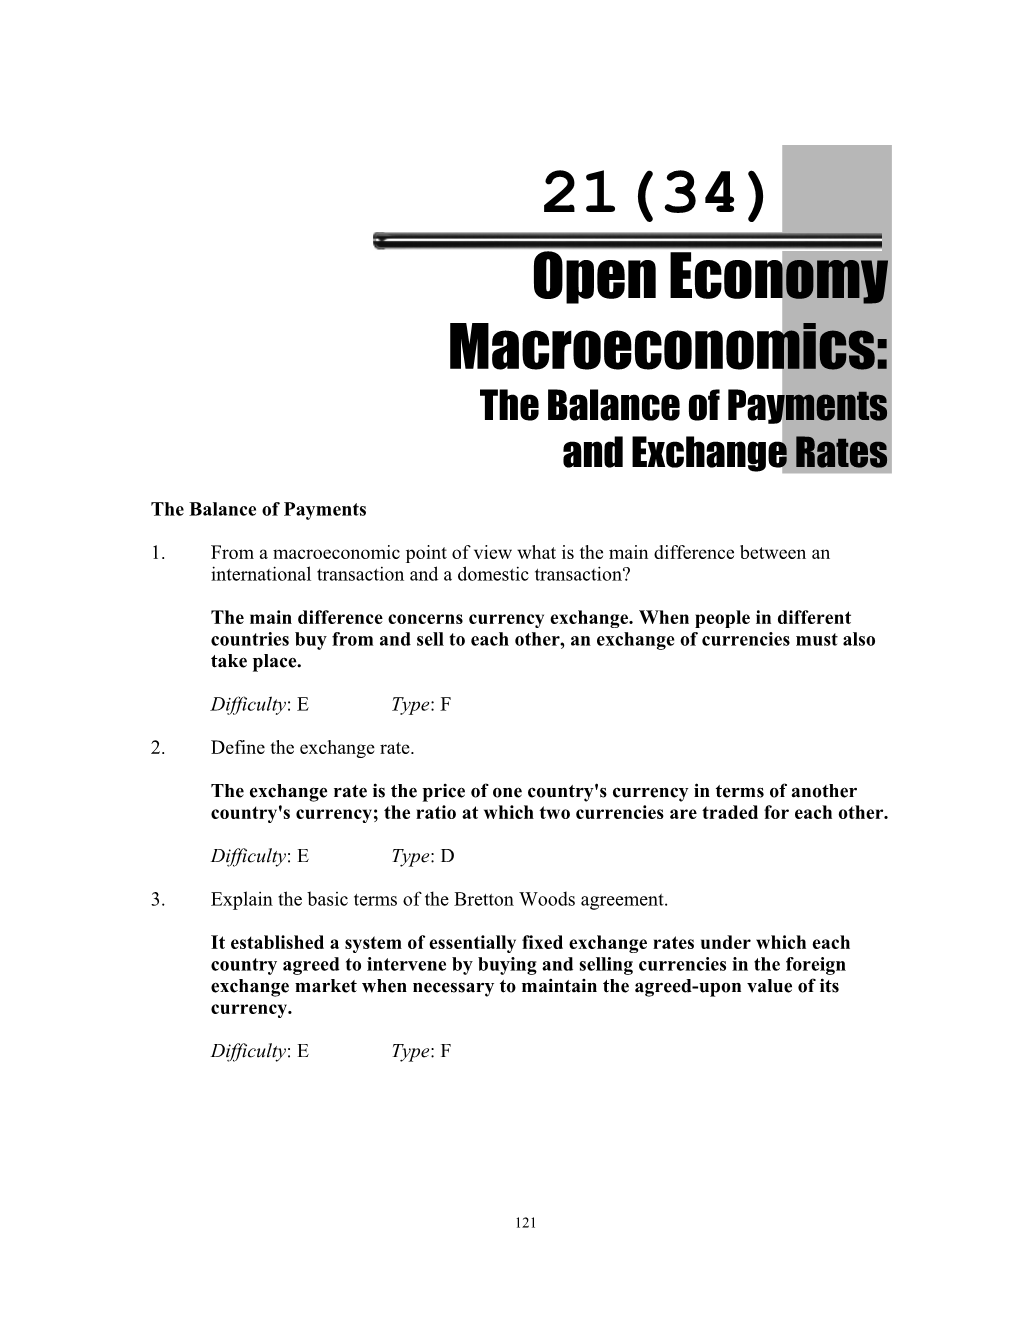 Chapter 21 (34): Open Economy Macroeconomics